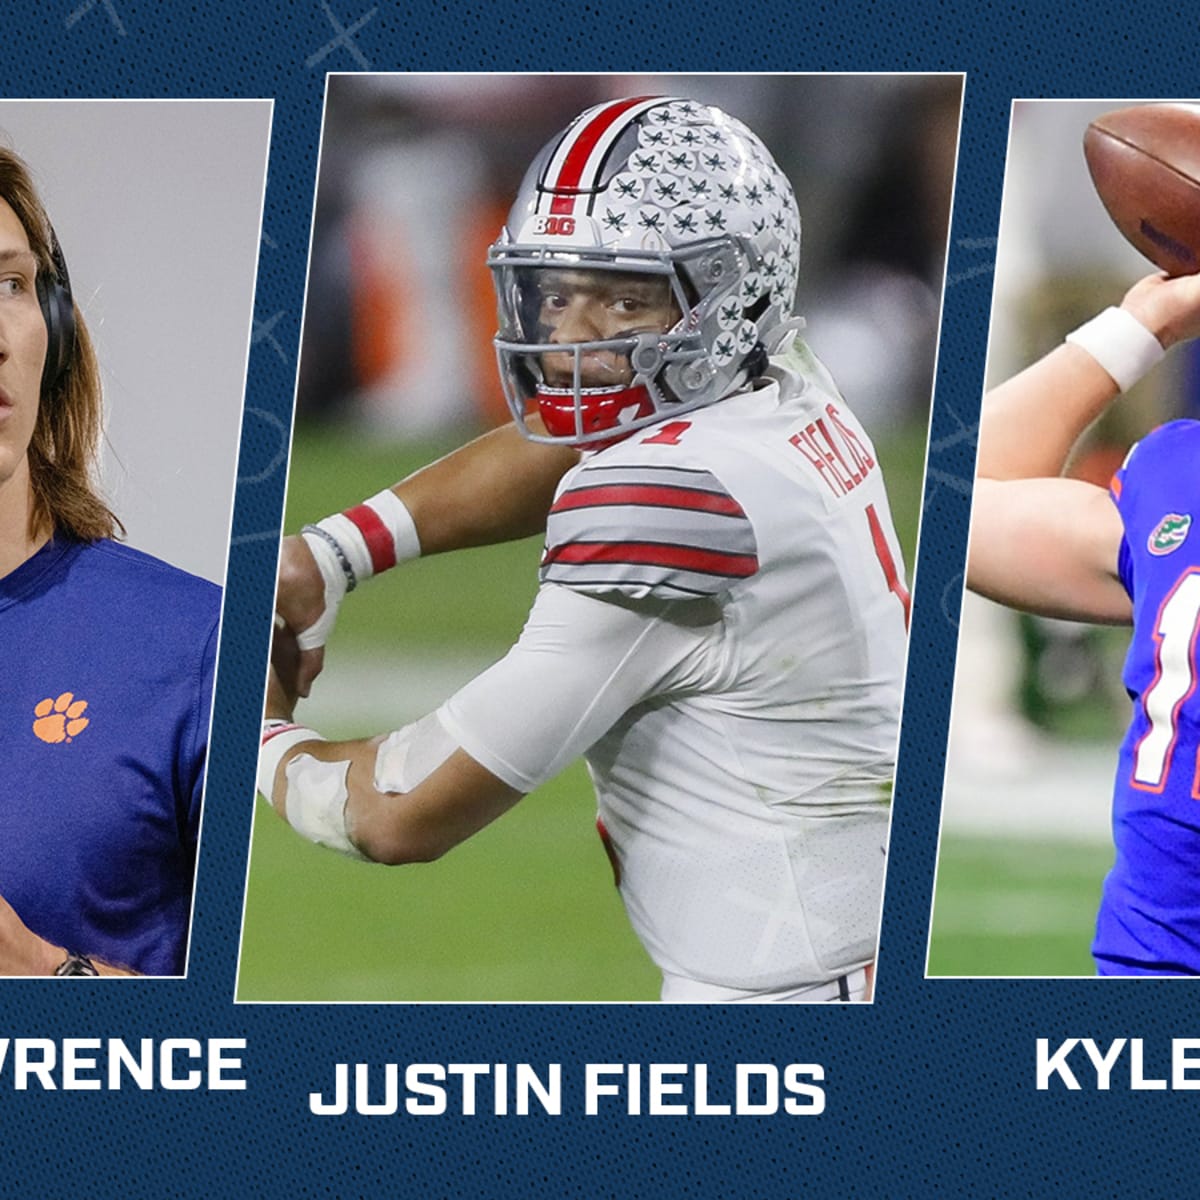 2021 NFL Draft: 3 best fits for quarterback Kyle Trask